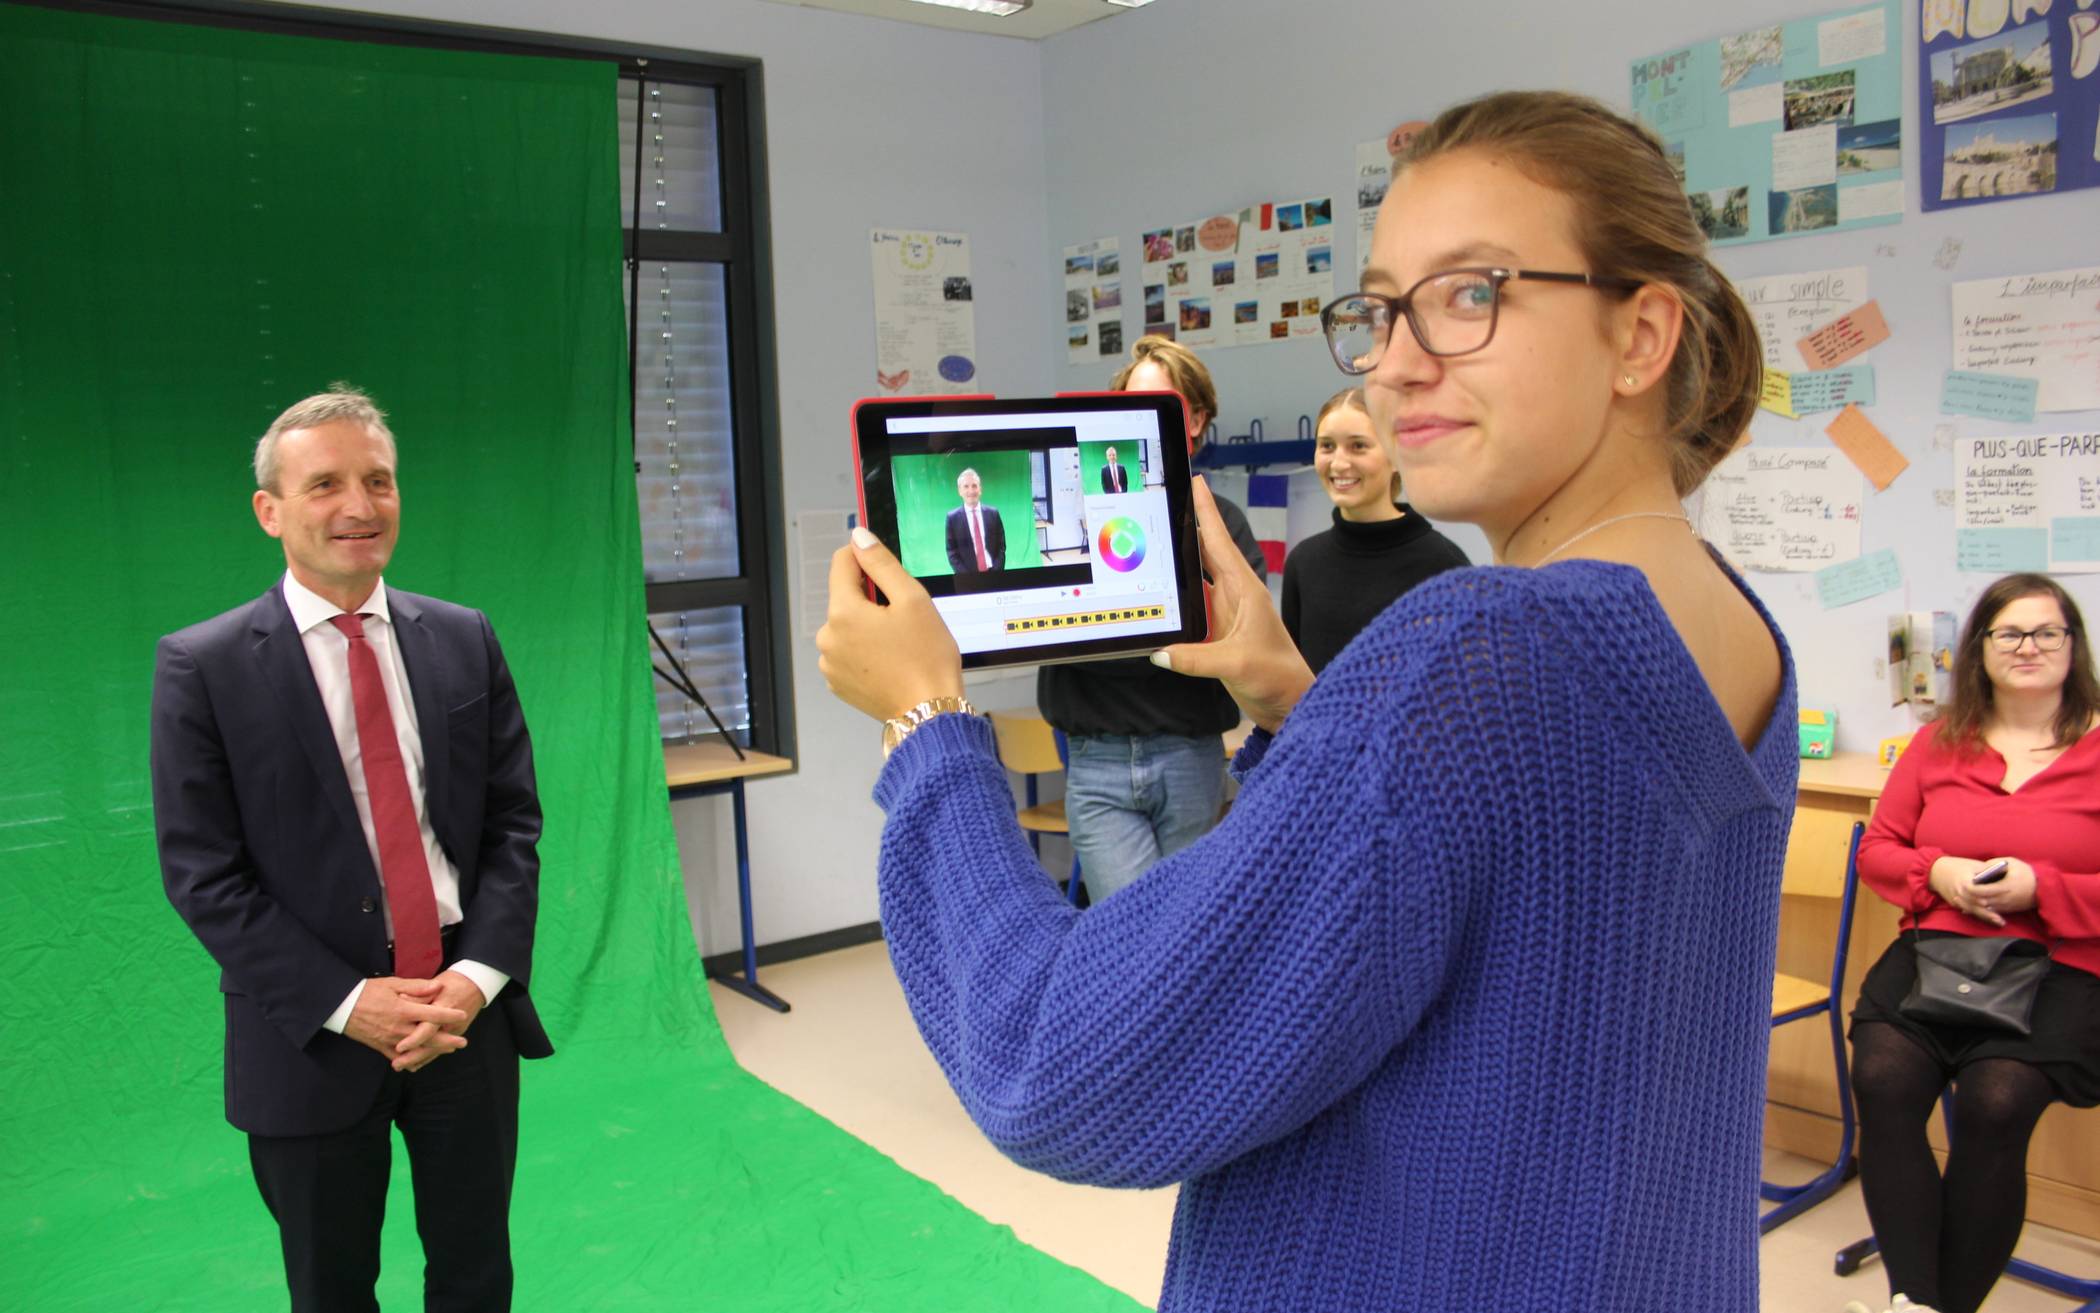  Filmen mit dem iPad und dann noch den Oberbürgermeister: In der Spanisch-Klasse von Frederico Rodriguez machten Schülerinnen und Schüler sofort Gebrauch von den neuen Geräten. 